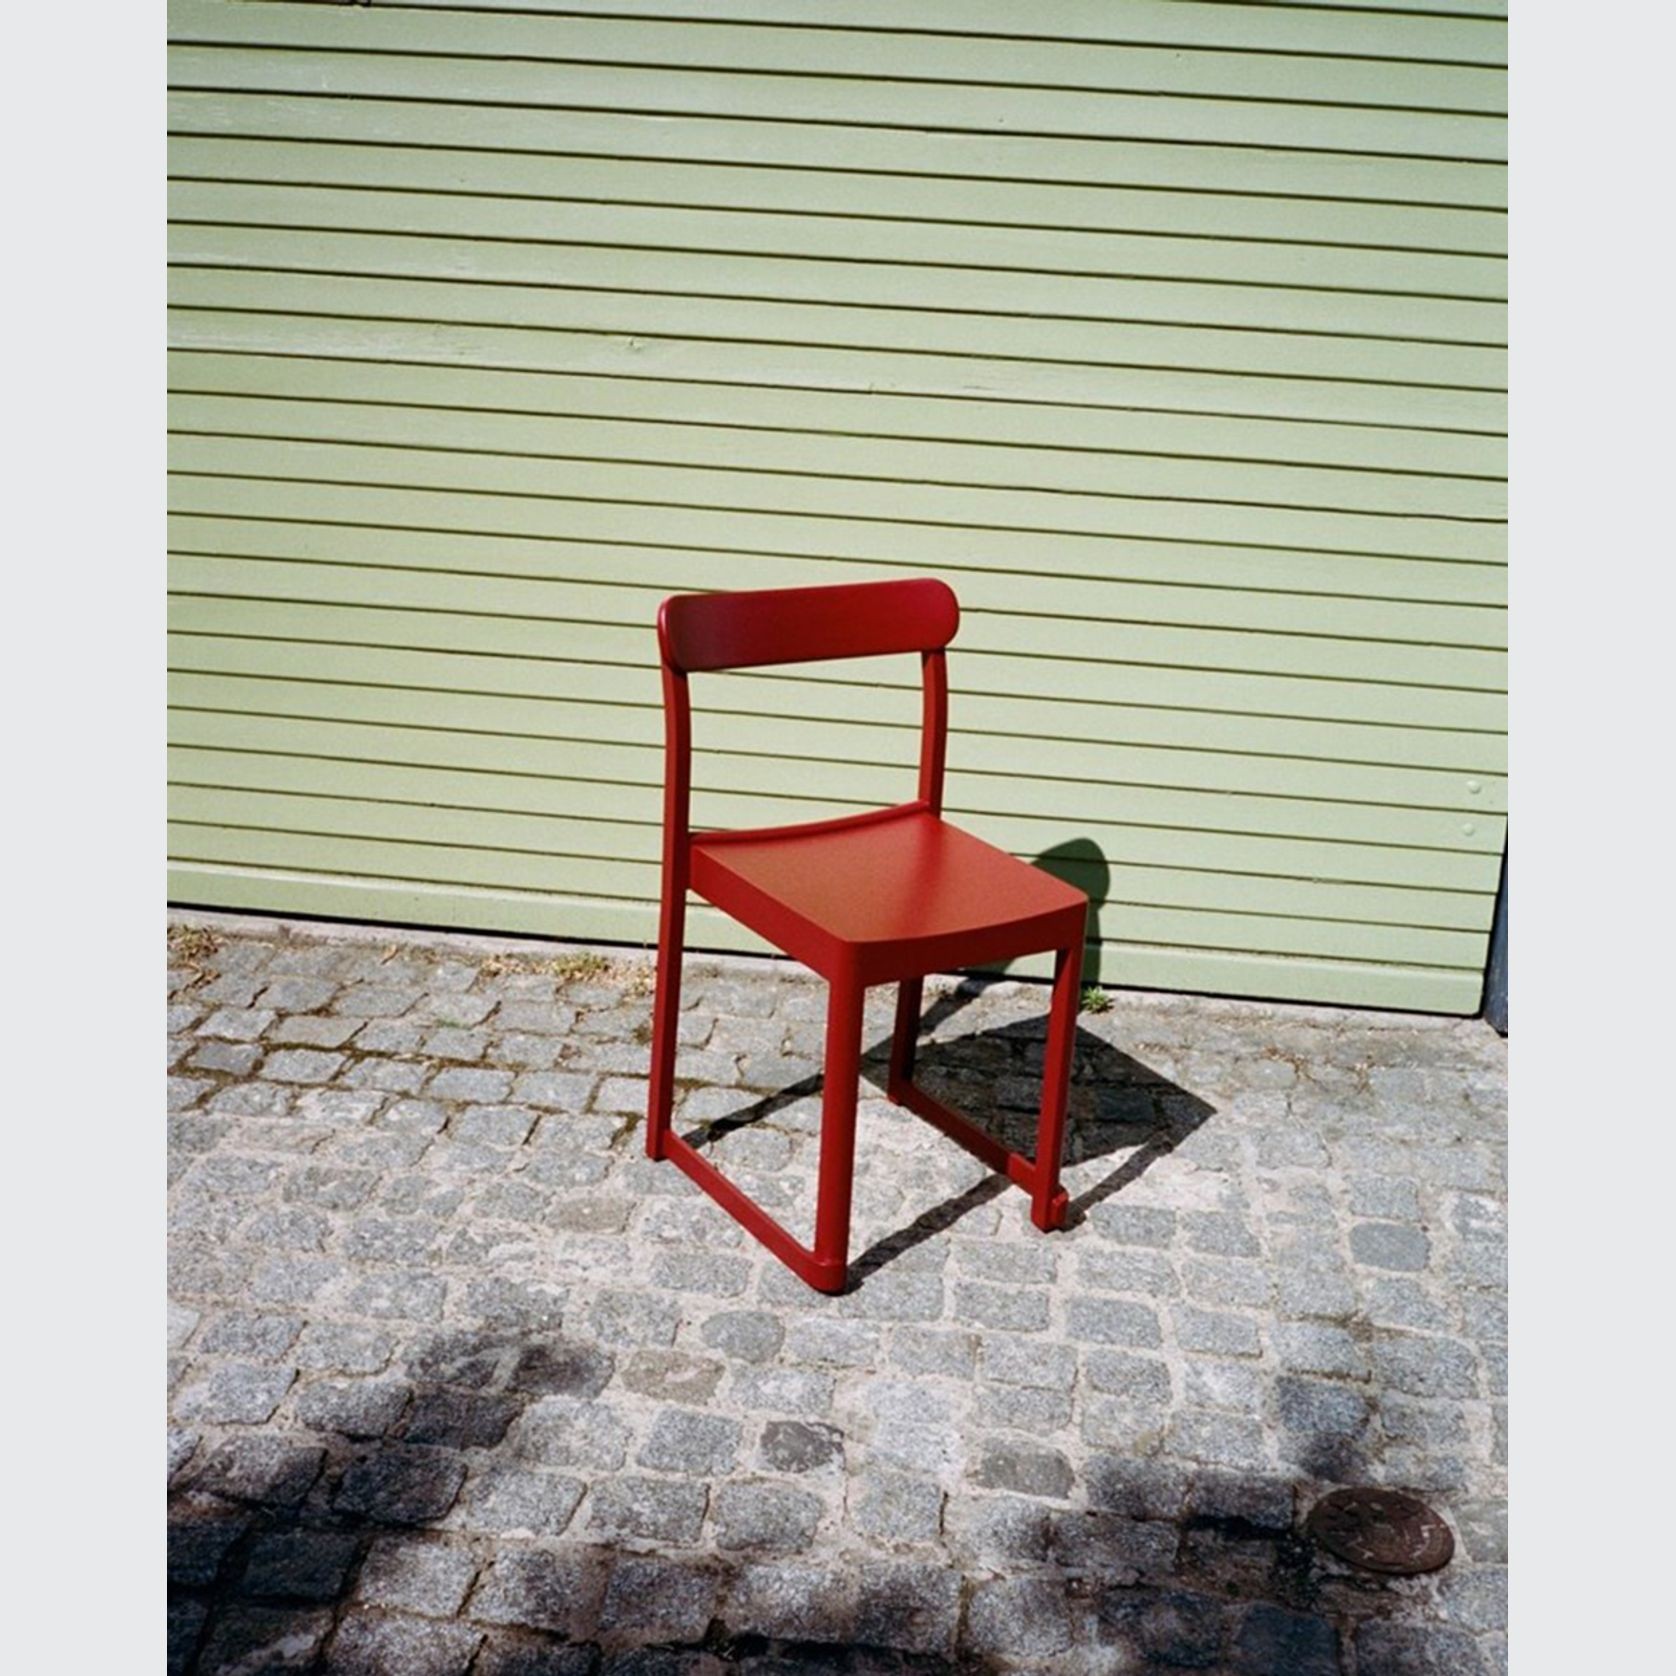 Atelier Chair by Artek gallery detail image